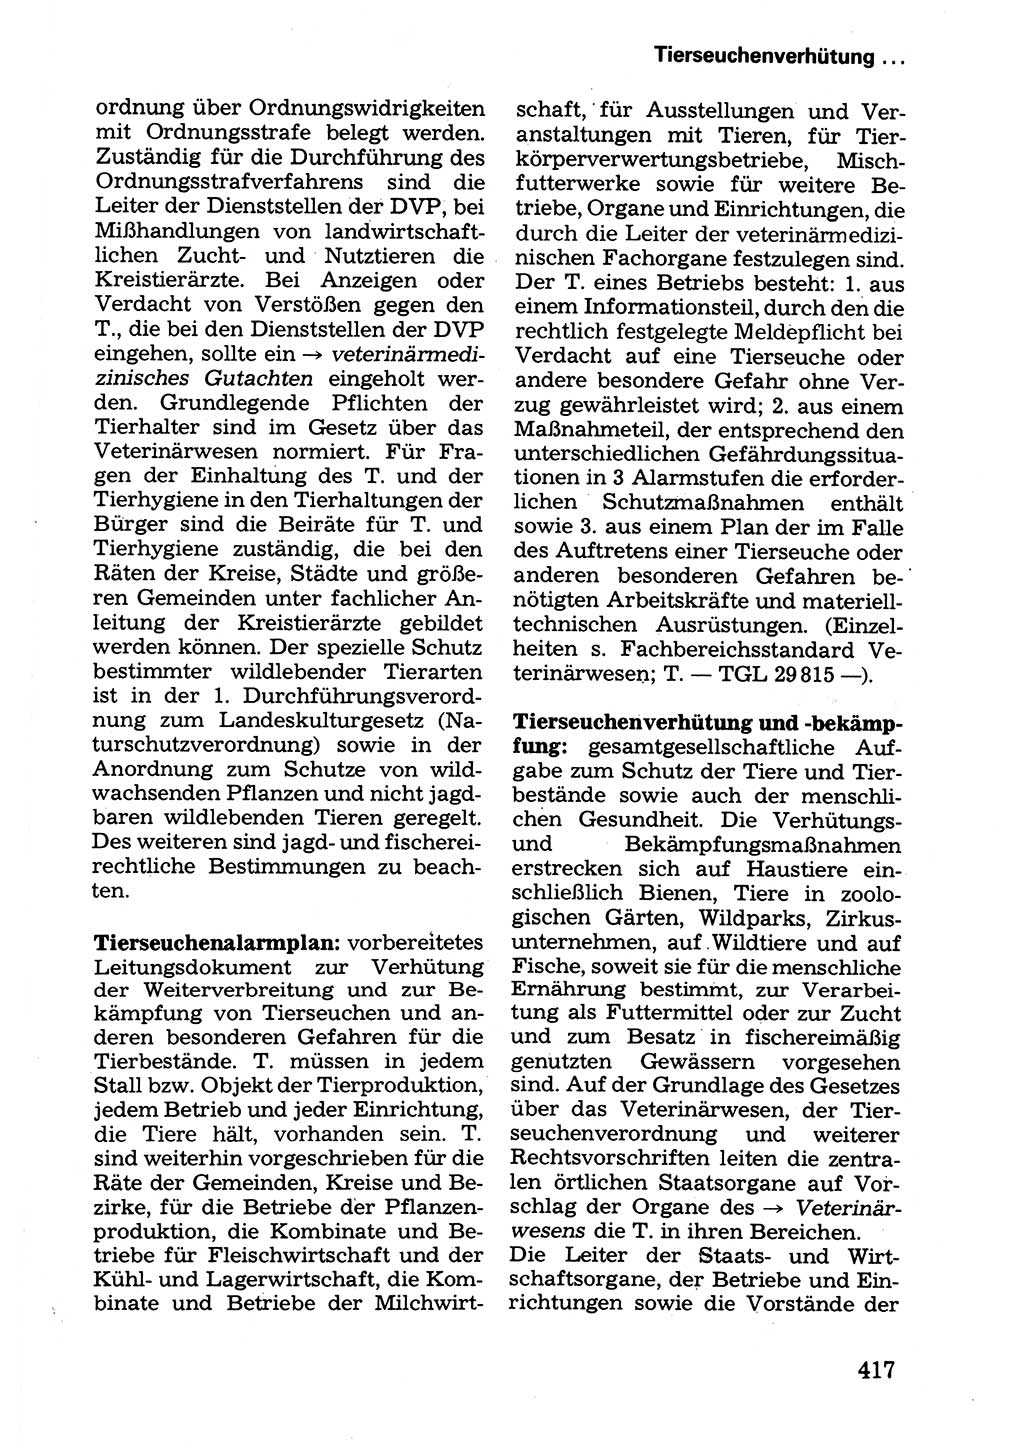 Wörterbuch der sozialistischen Kriminalistik [Deutsche Demokratische Republik (DDR)] 1981, Seite 417 (Wb. soz. Krim. DDR 1981, S. 417)